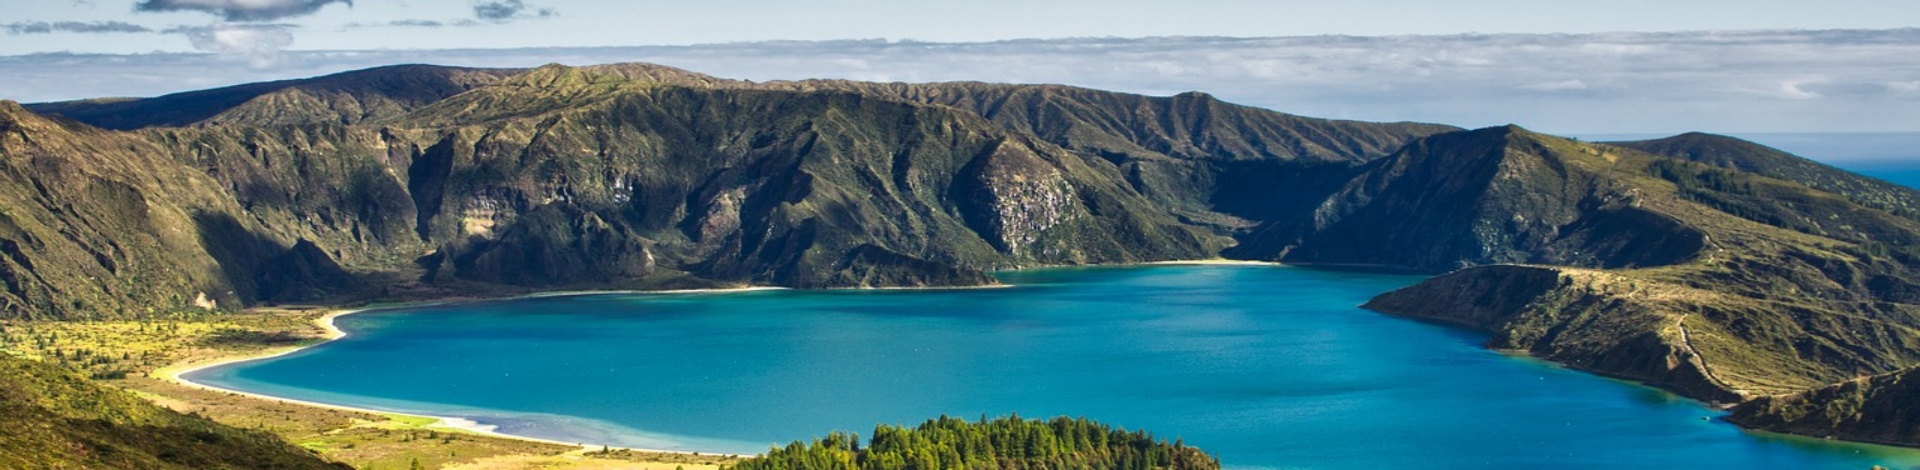 Geheimtipp Azoren: Erhöhte Aussicht auf einen See